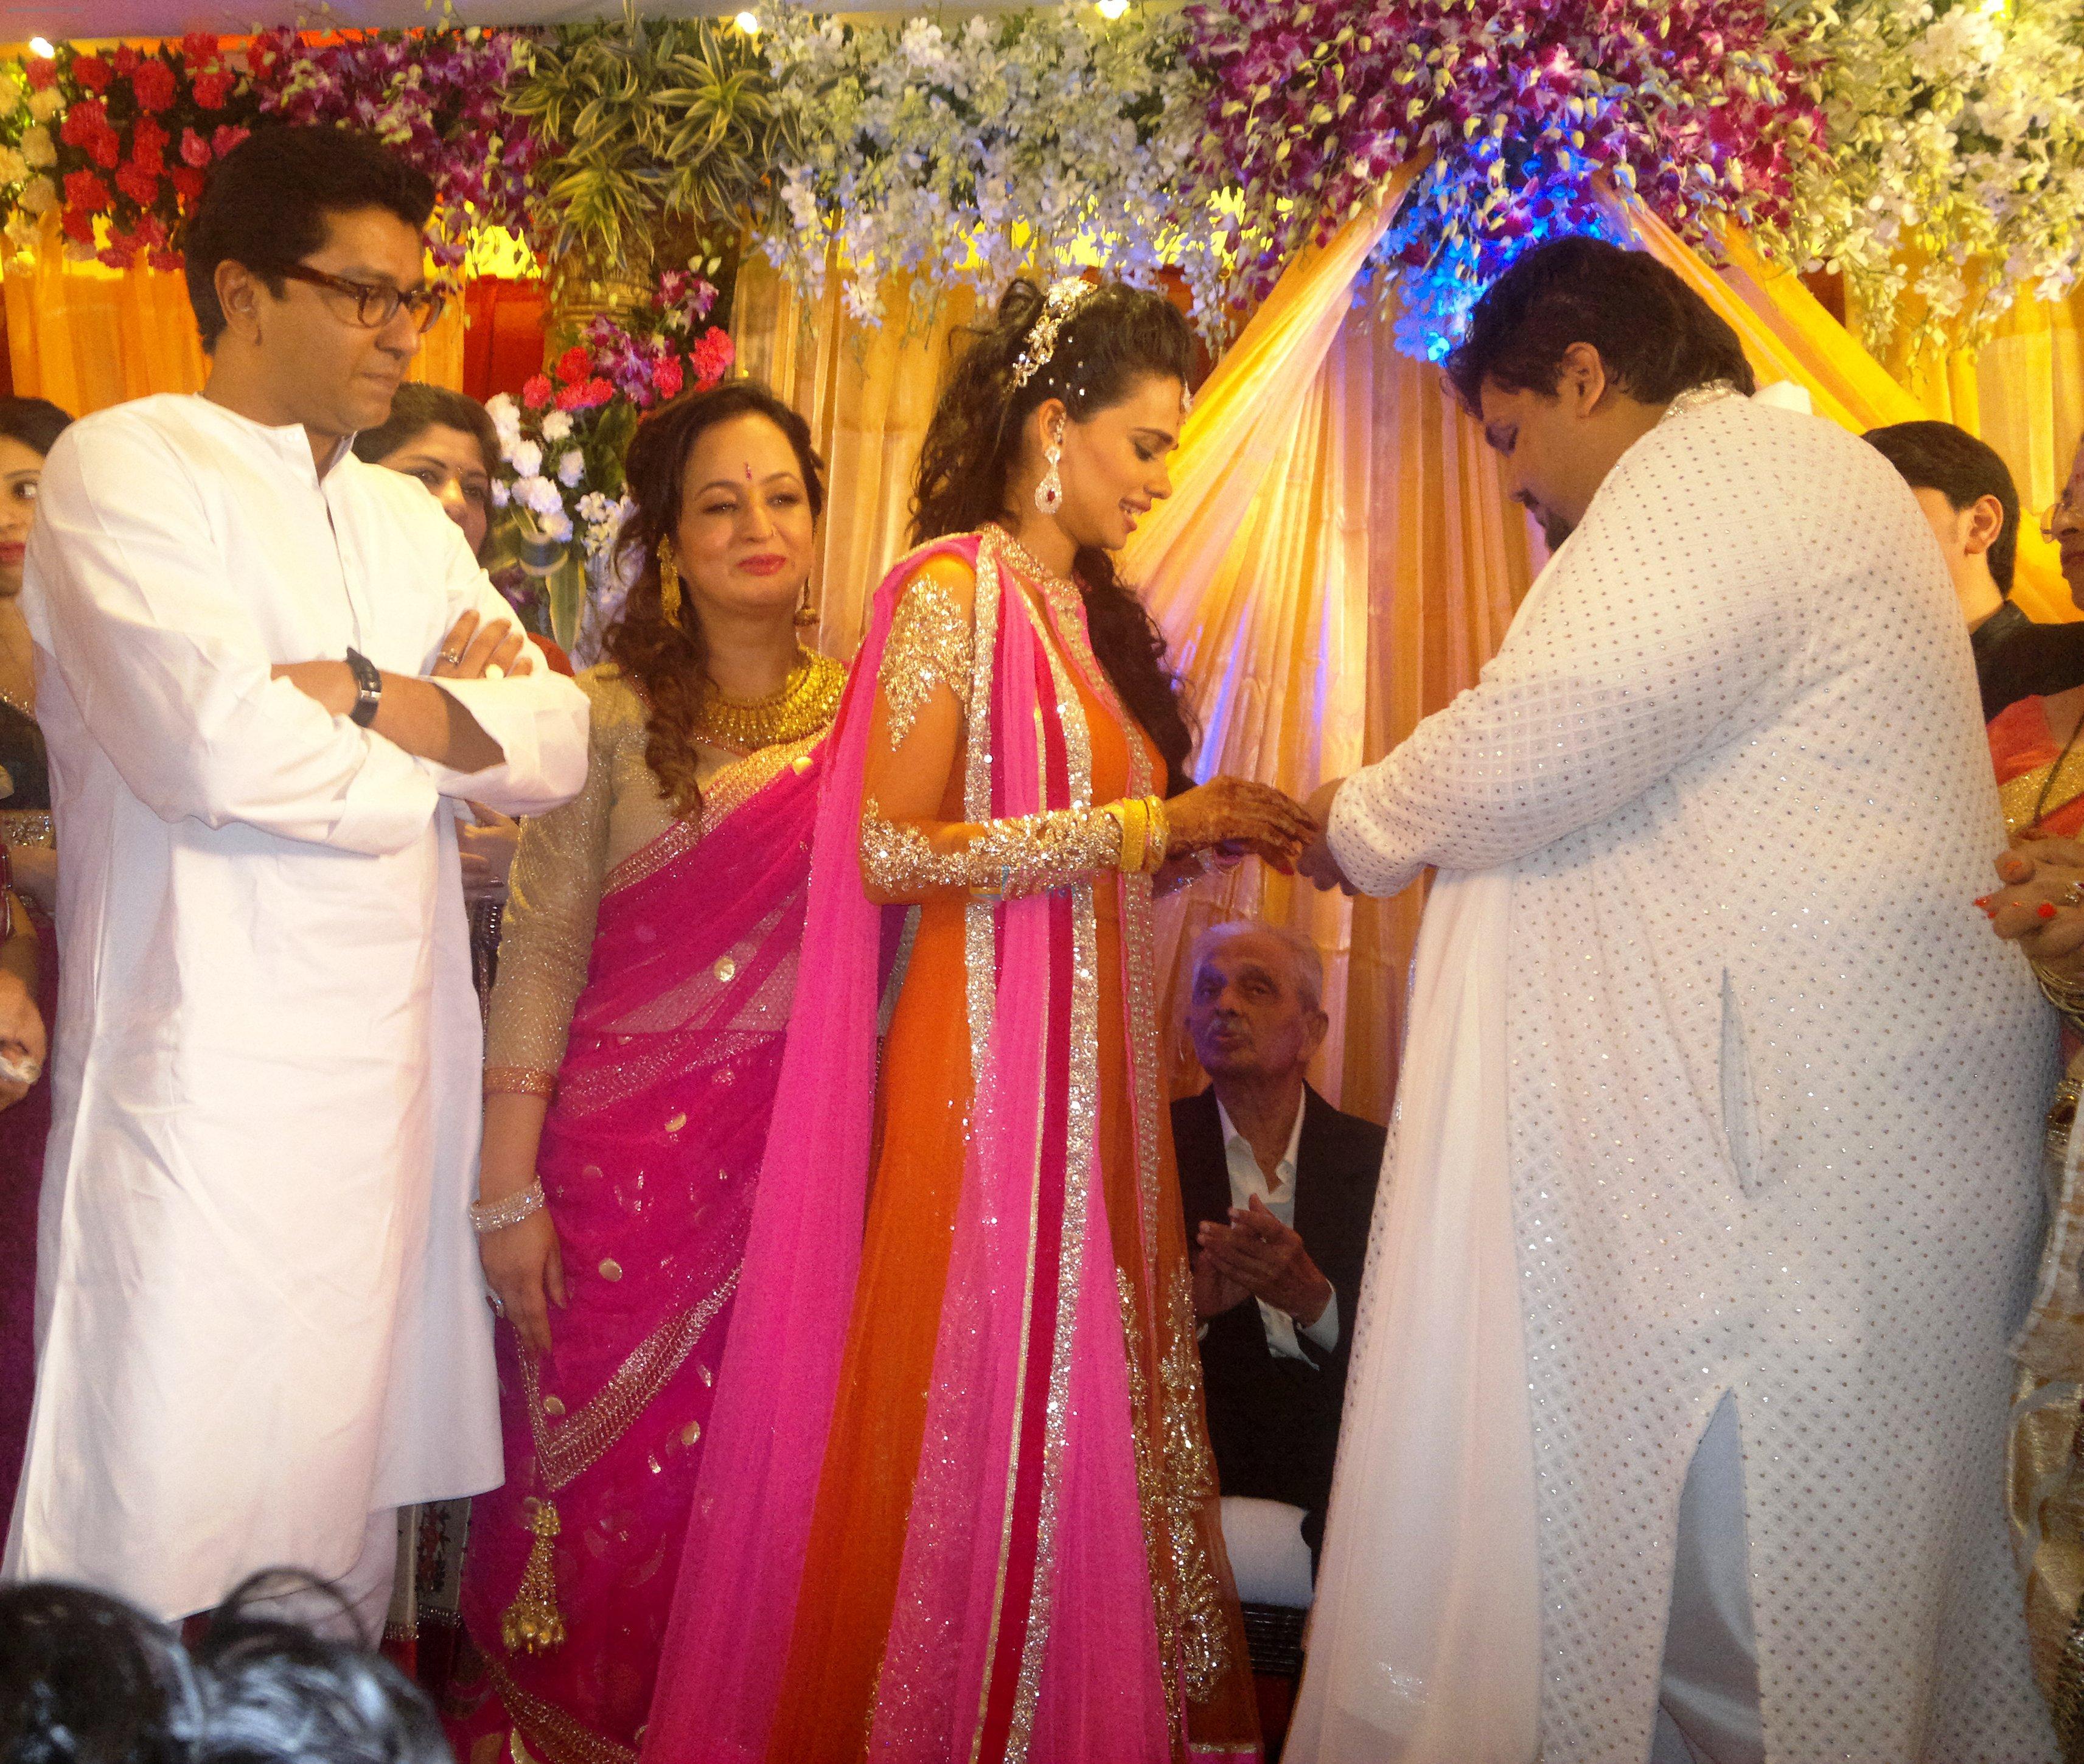 raj thackeray, smita thackeray, aditi redkar and rahul thackeray at aditi and rahul's engagement.